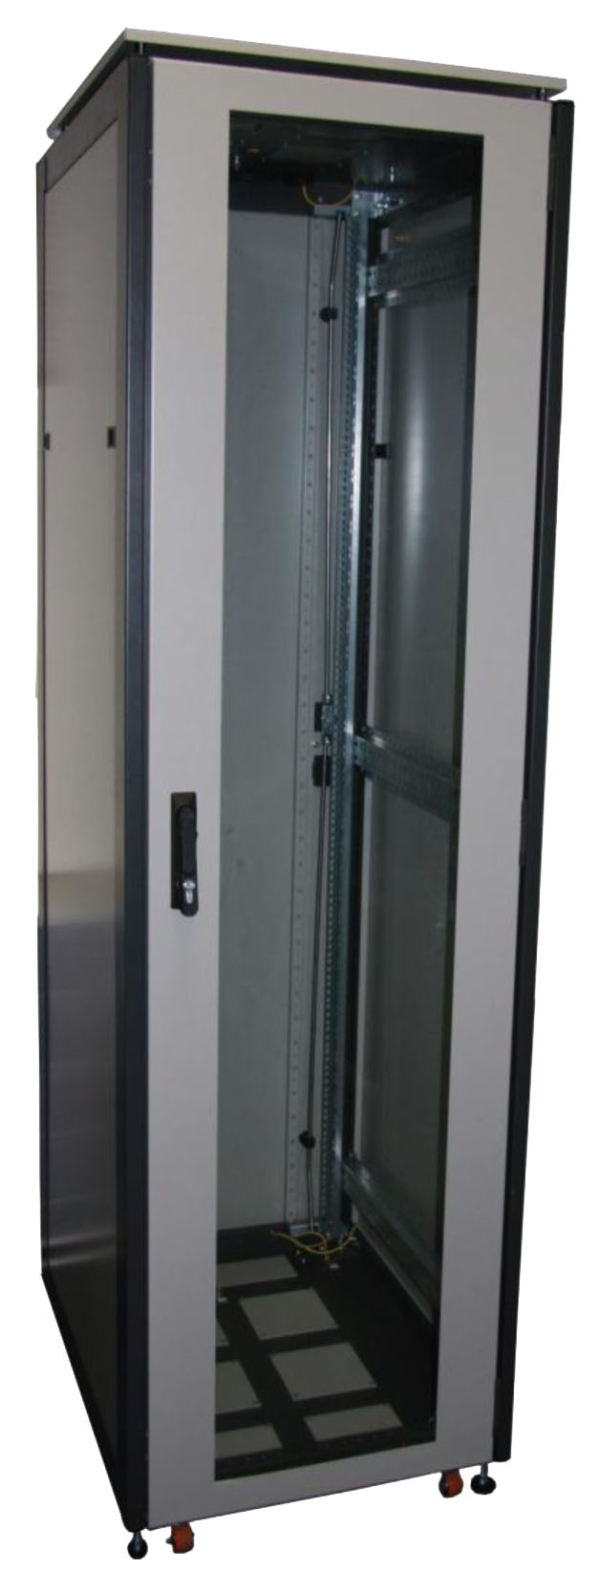 ССКТБ ТОМАСС ШТК-6612Э-00 - шкаф телекоммуникационный 19", 24U, 600х600х1200 мм, с металлической и стеклянной дверью